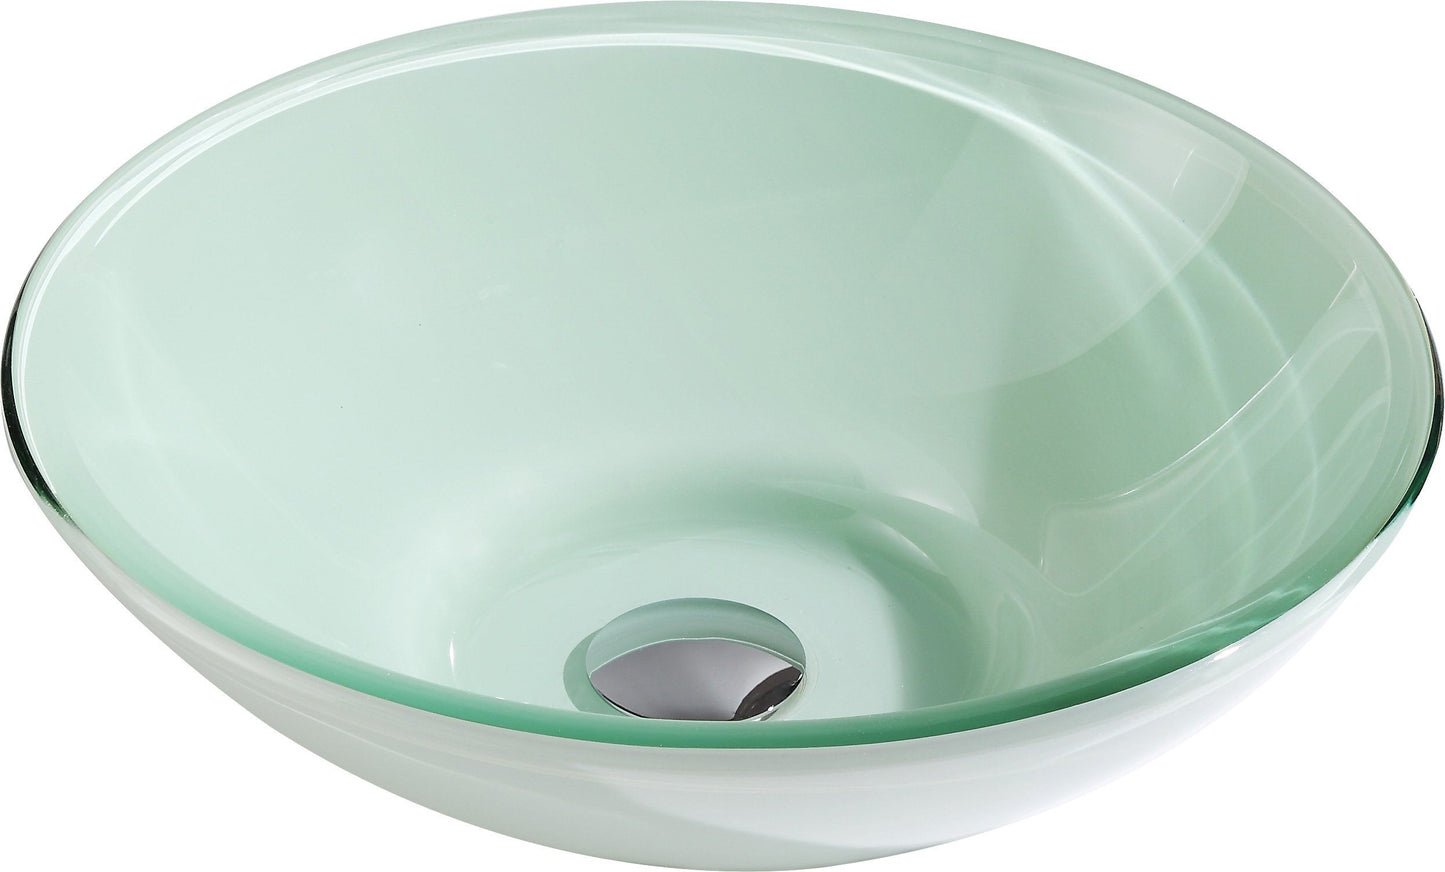 Sonata Series Deco-Glass Vessel Sink in Lustrous Light Green - Luxe Bathroom Vanities